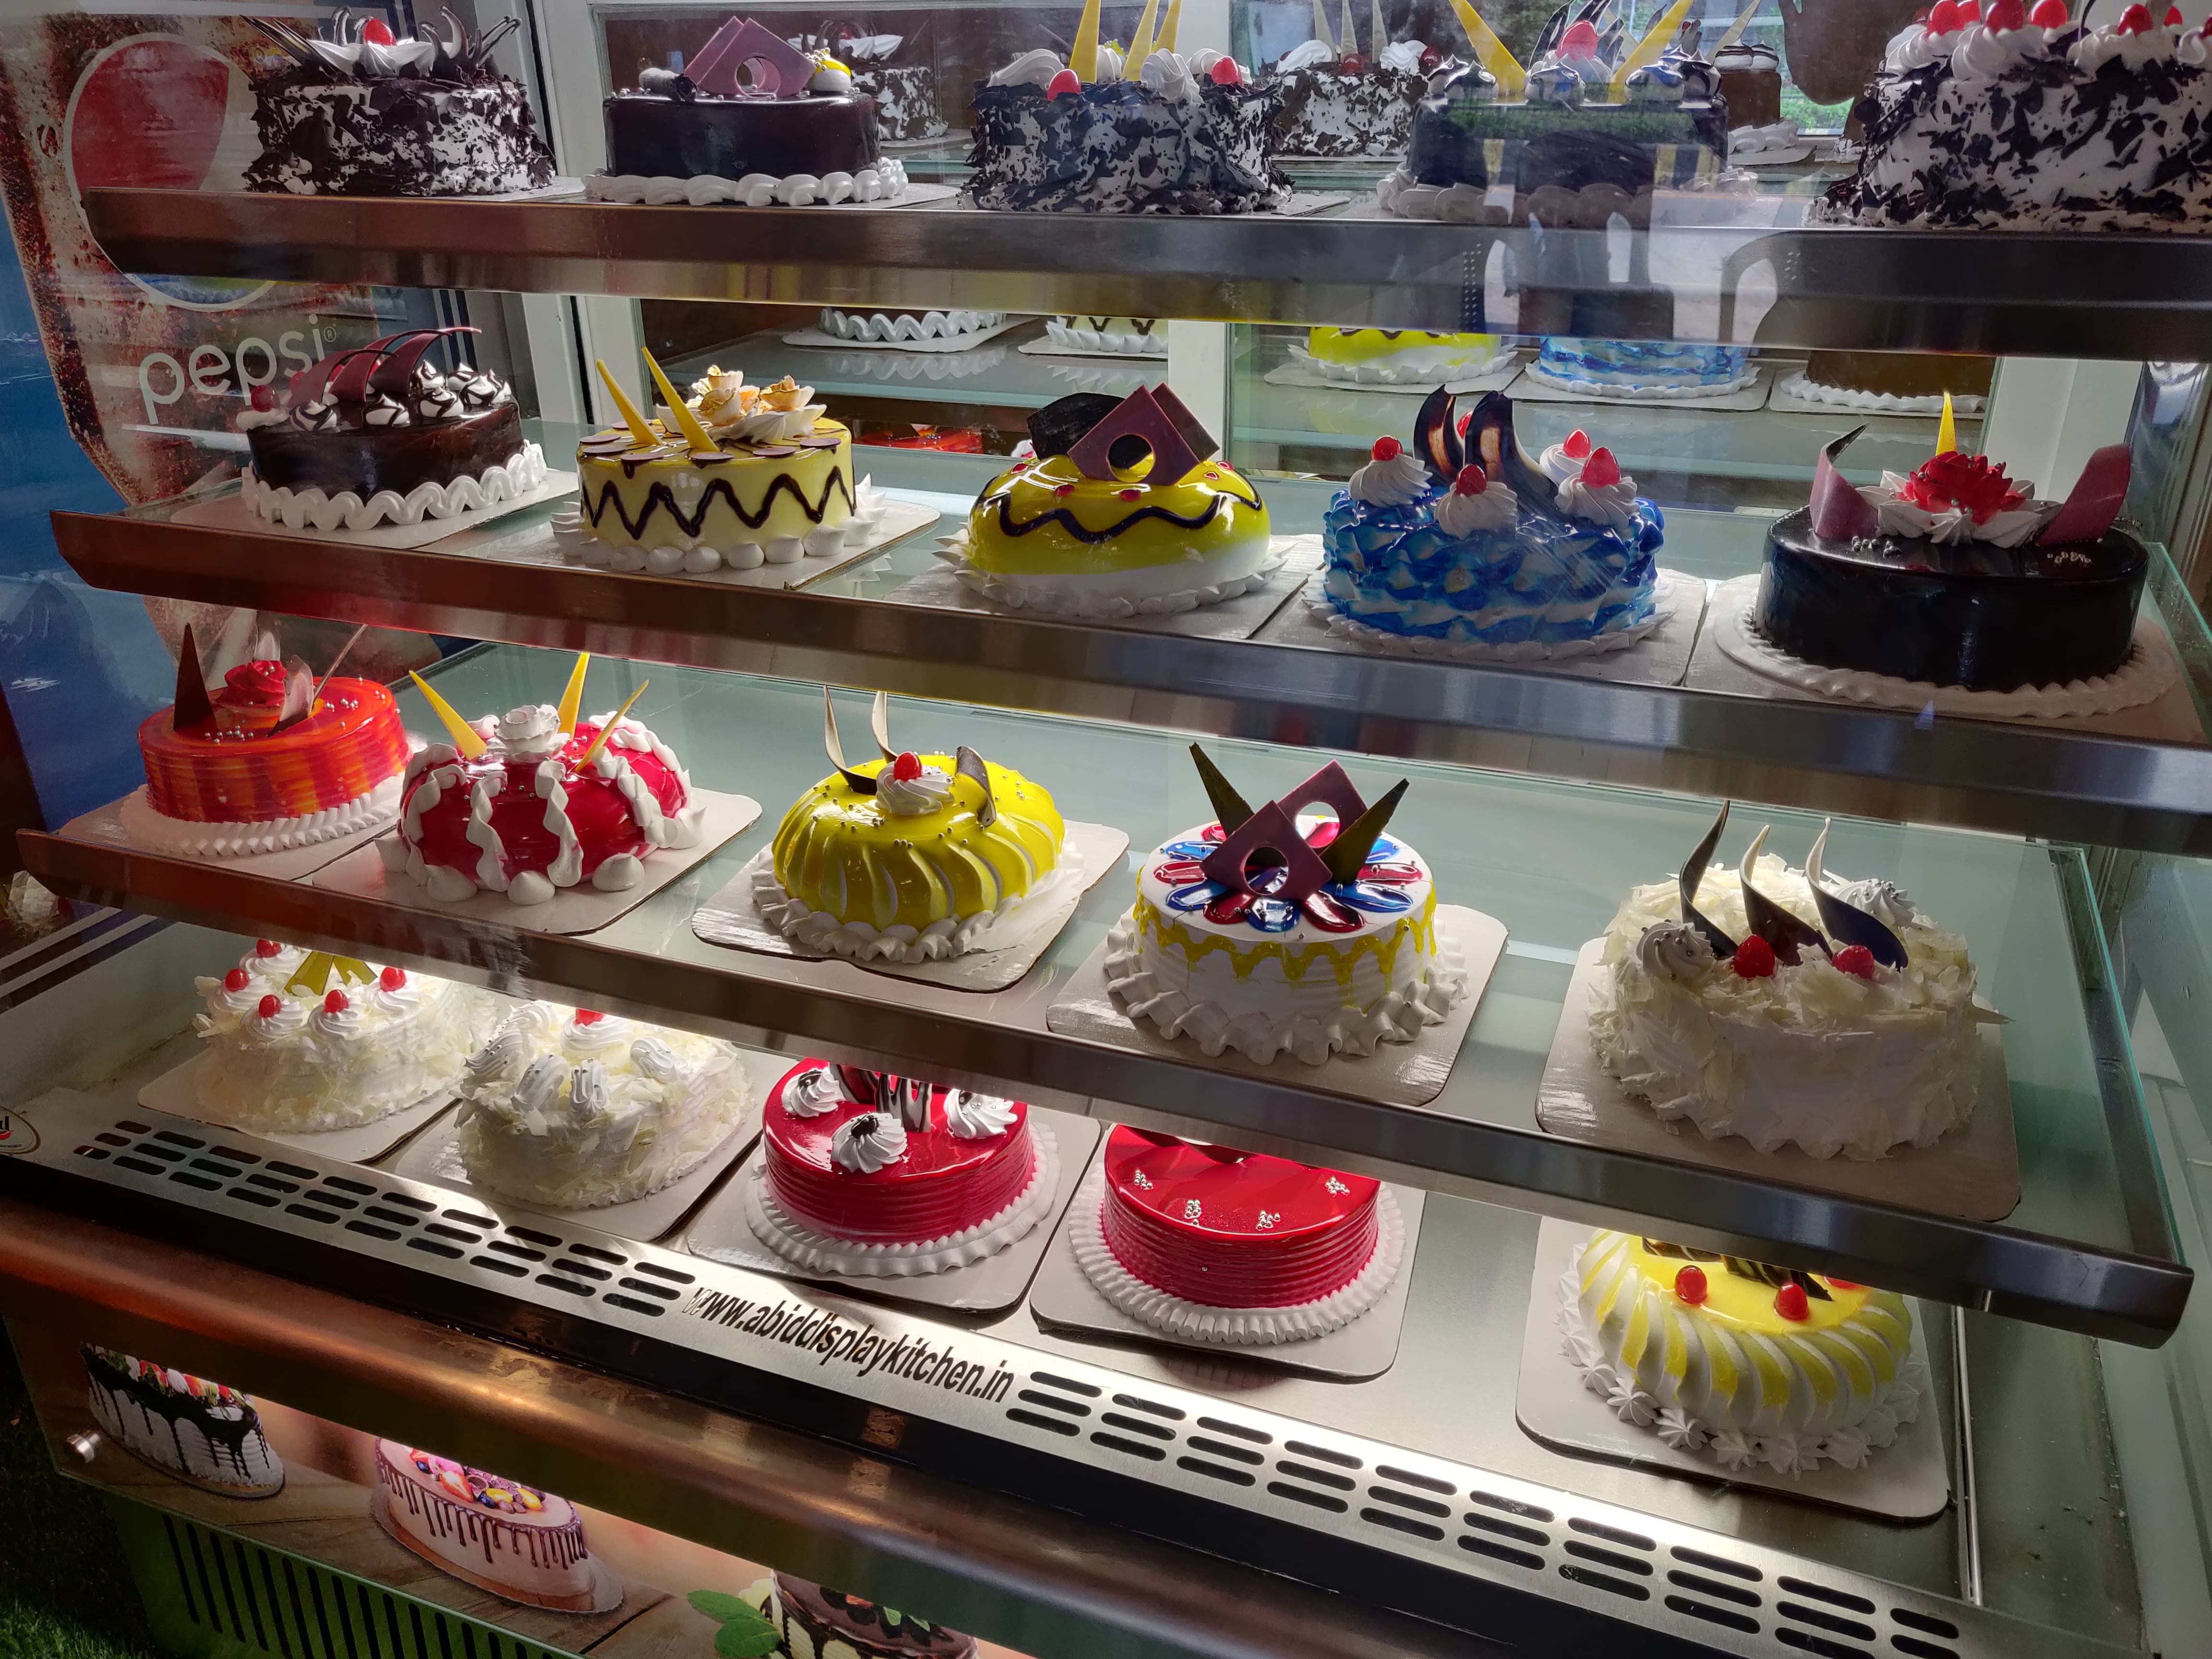 Bake-ur-day-freshest-cakes In Mumbai | Order Online | Swiggy